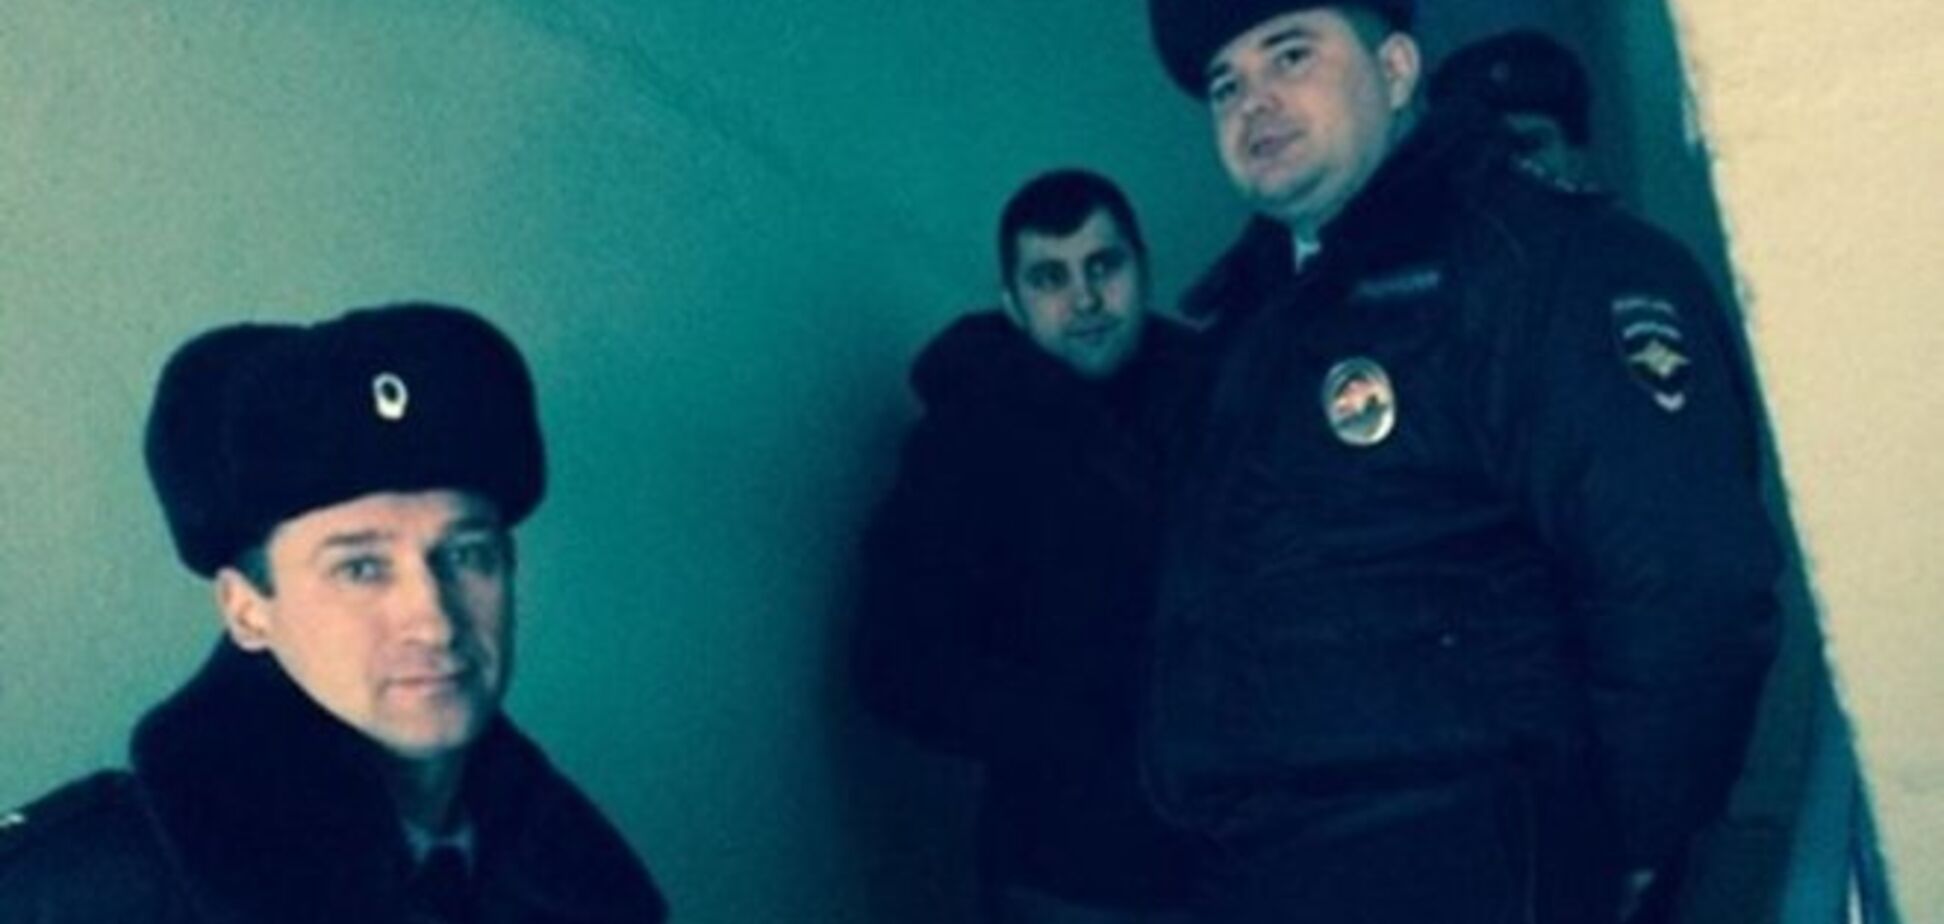 Под дверью квартиры Навального дежурят четверо полицейских: опубликовано фото